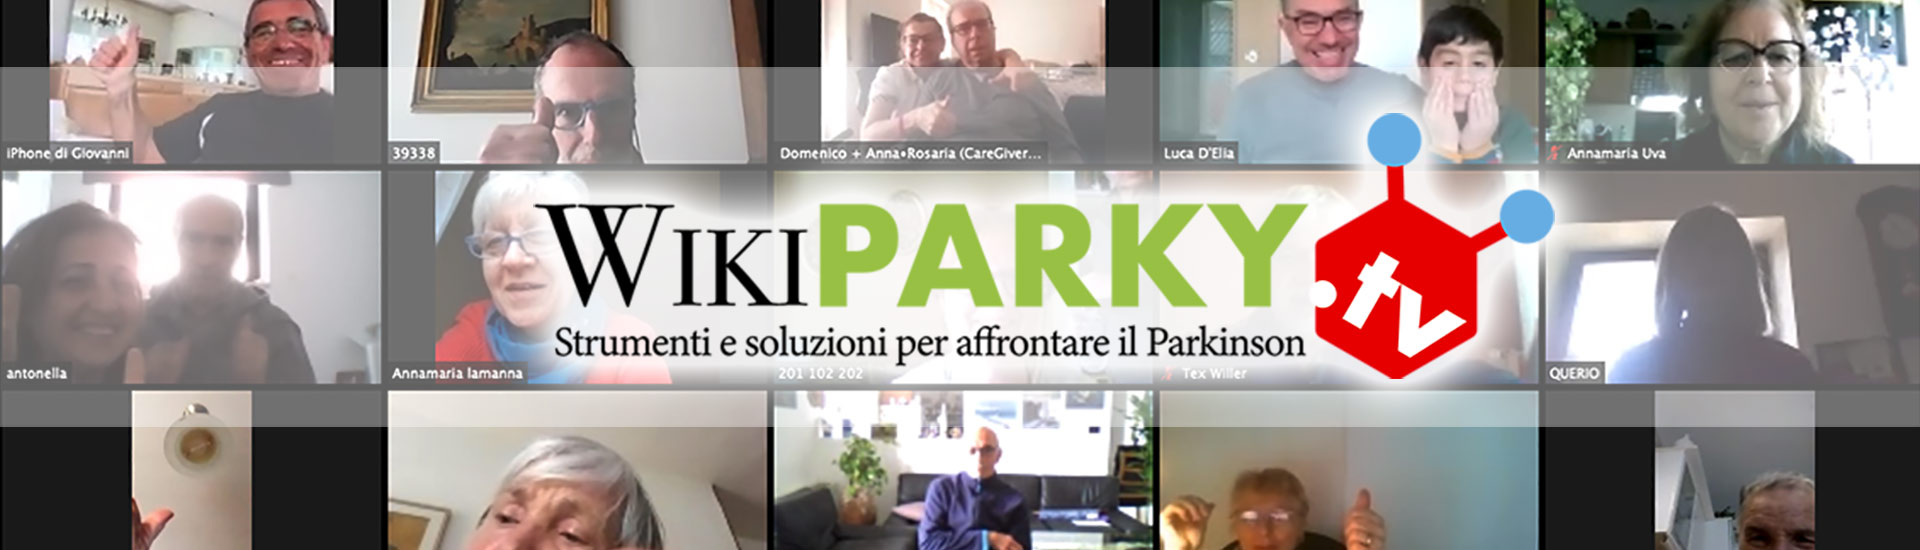 WikiParky.TV 3.0 - Strumenti e soluzioni per affrontare il Parkinson ed i parkinsonismi